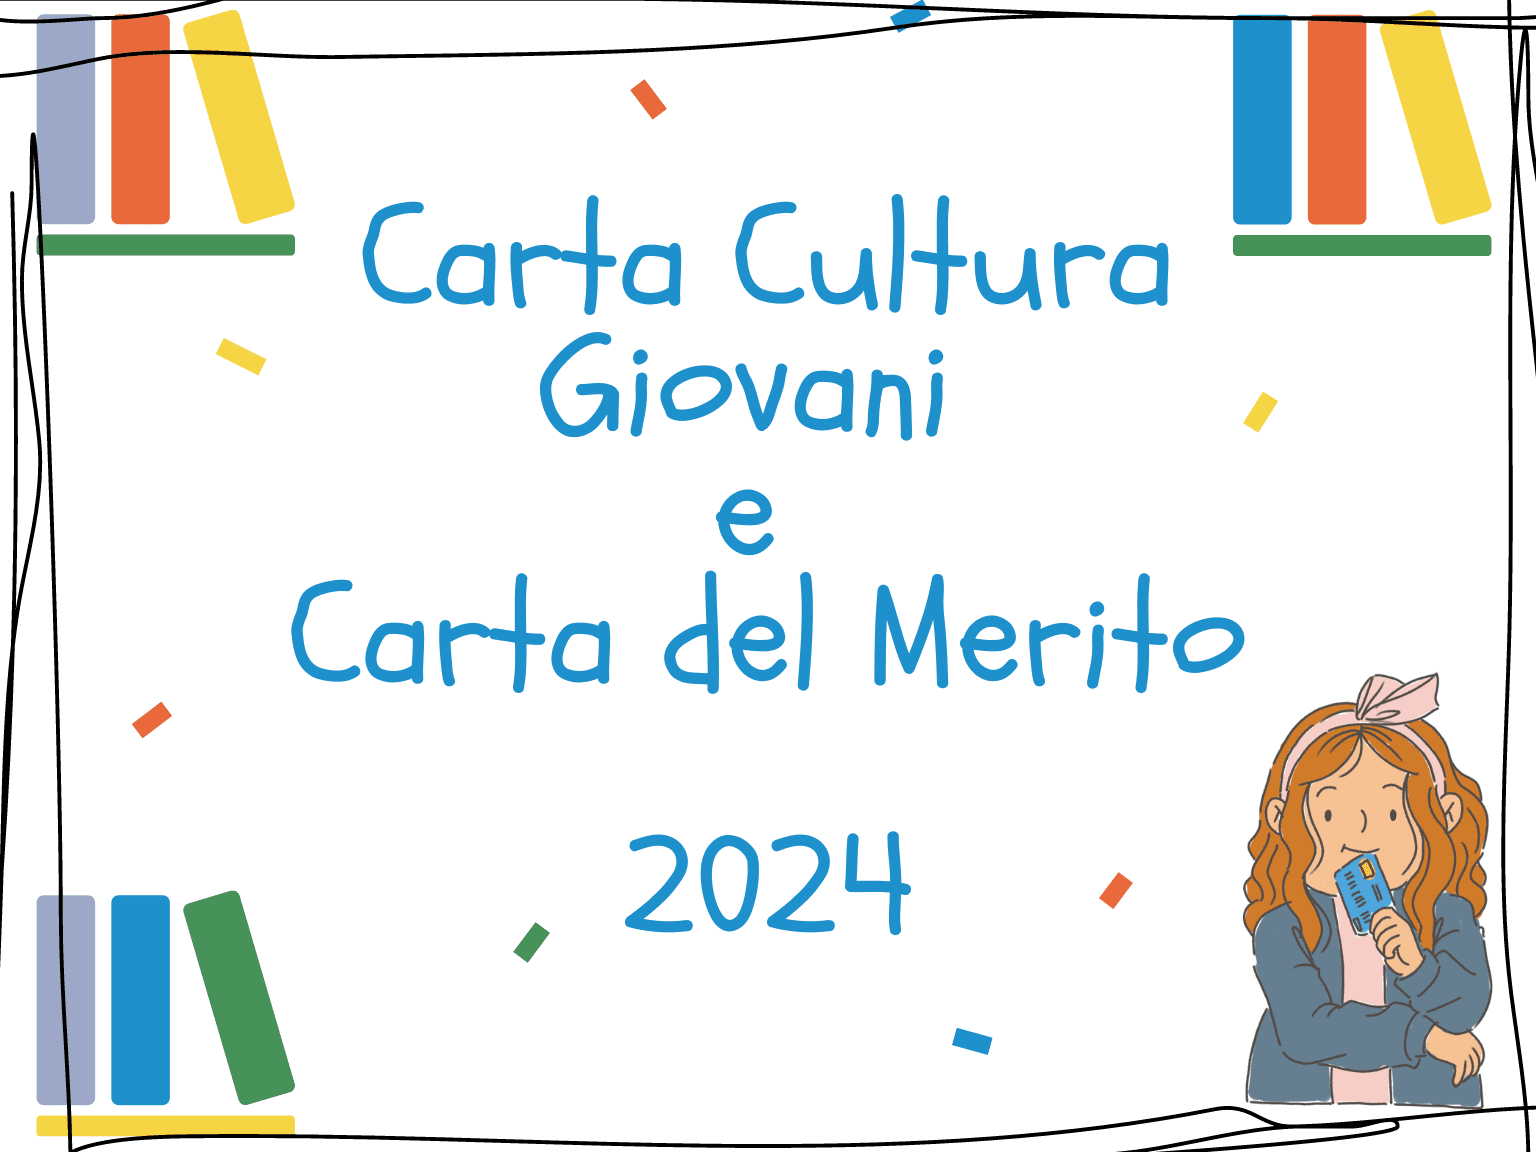 Carta Cultura Giovani e Carta del Merito 2024 offrono €500 a giovani e studenti. Scopri criteri e modalità di uso